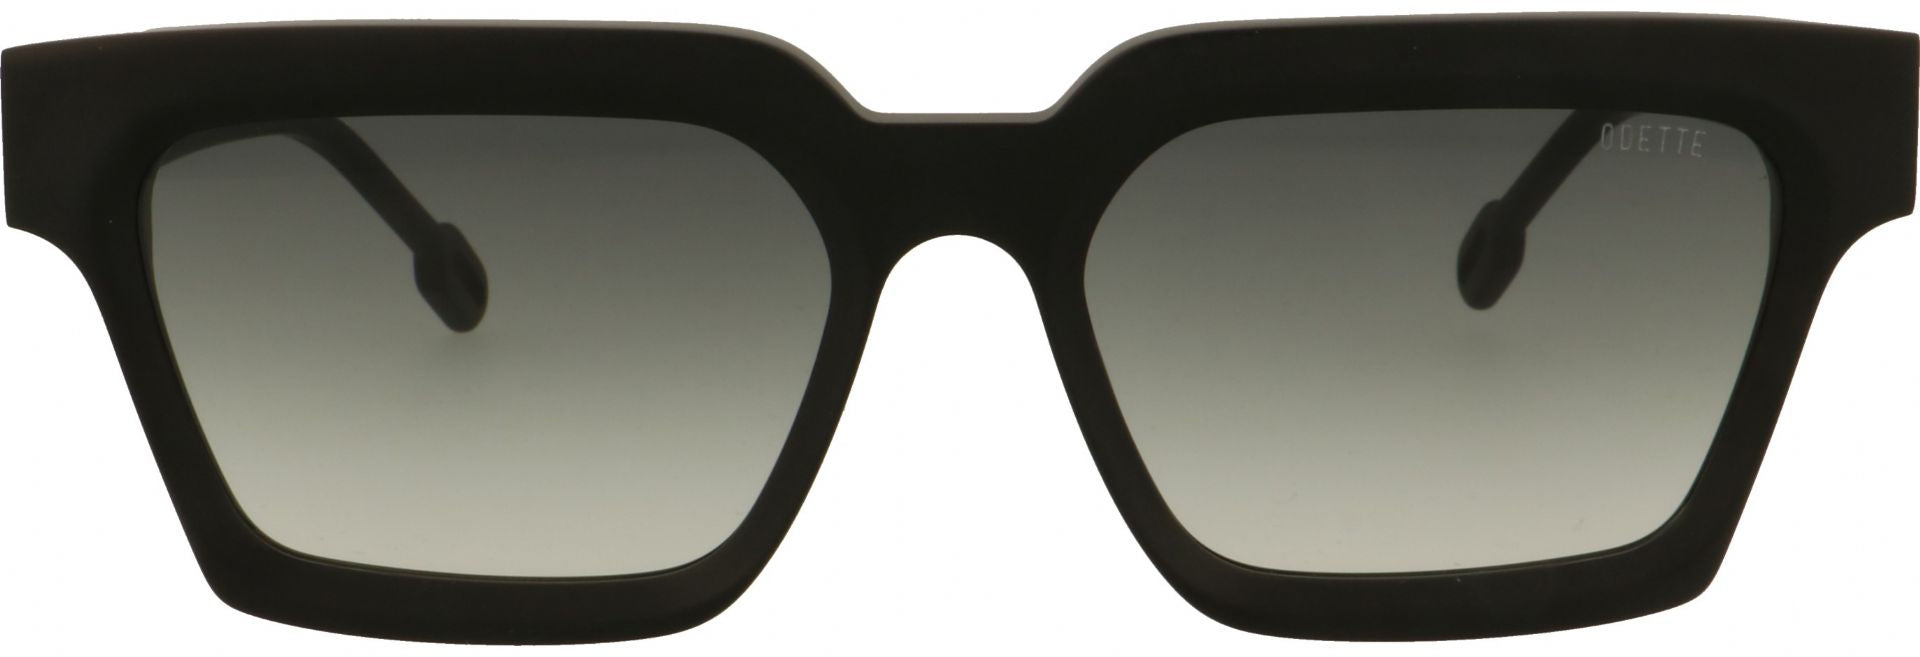 Odette lunettes Cyrus A001